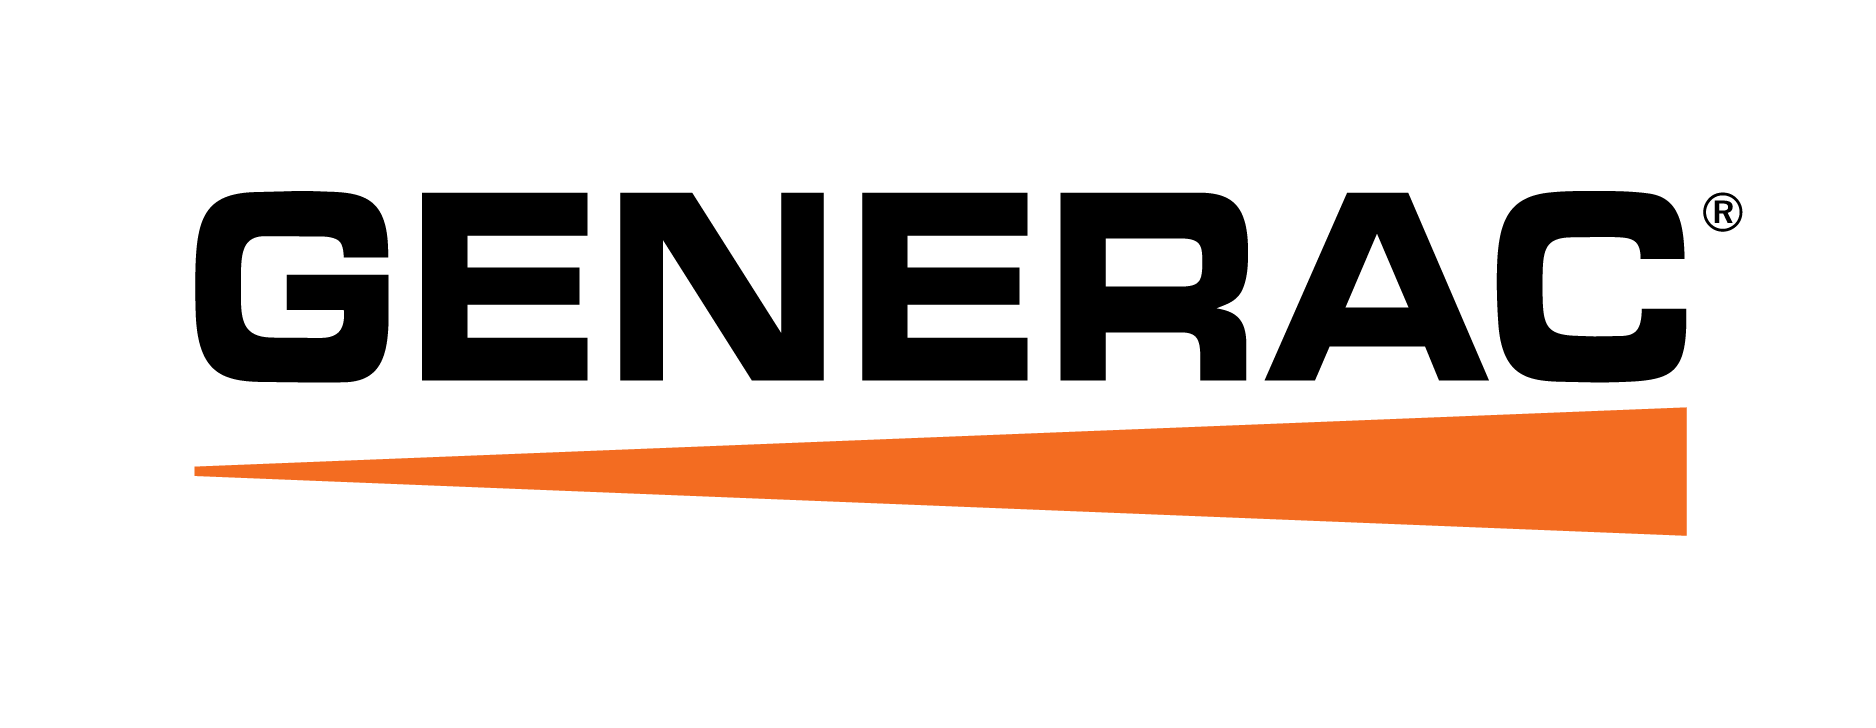 Generac logo with orange underline.